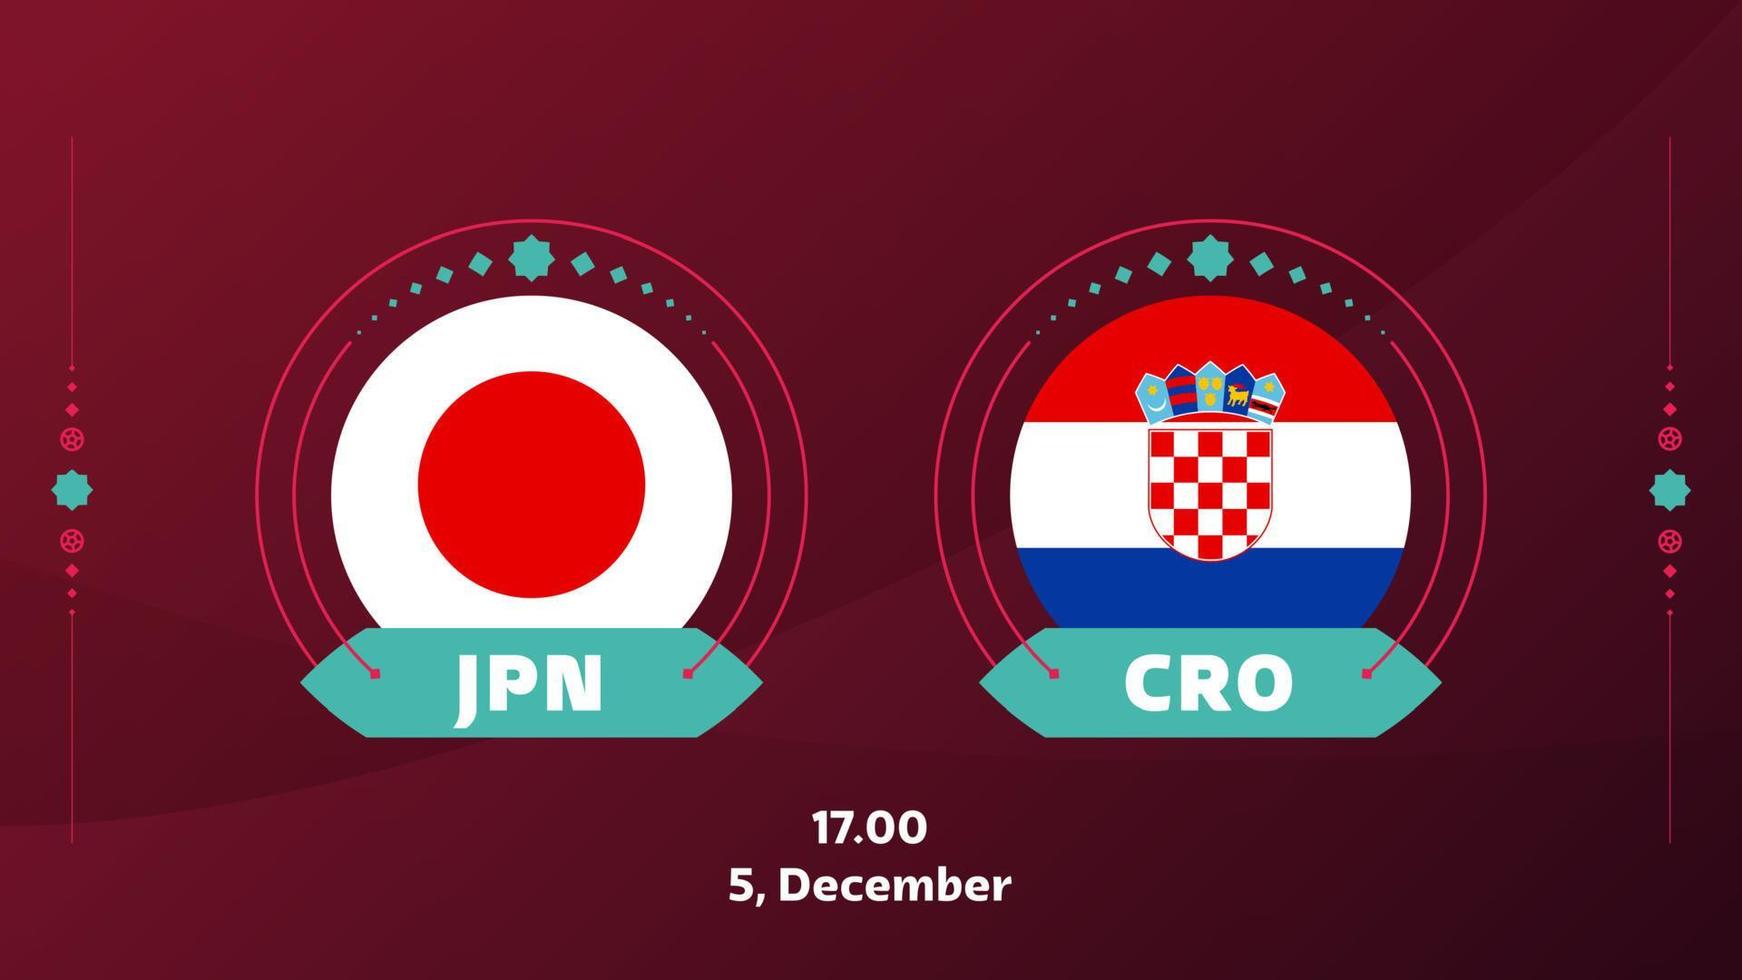 japon croatie séries éliminatoires de 16 matchs de football 2022. match de championnat du monde de football 2022 contre fond d'introduction des équipes, affiche de la compétition de championnat, illustration vectorielle vecteur